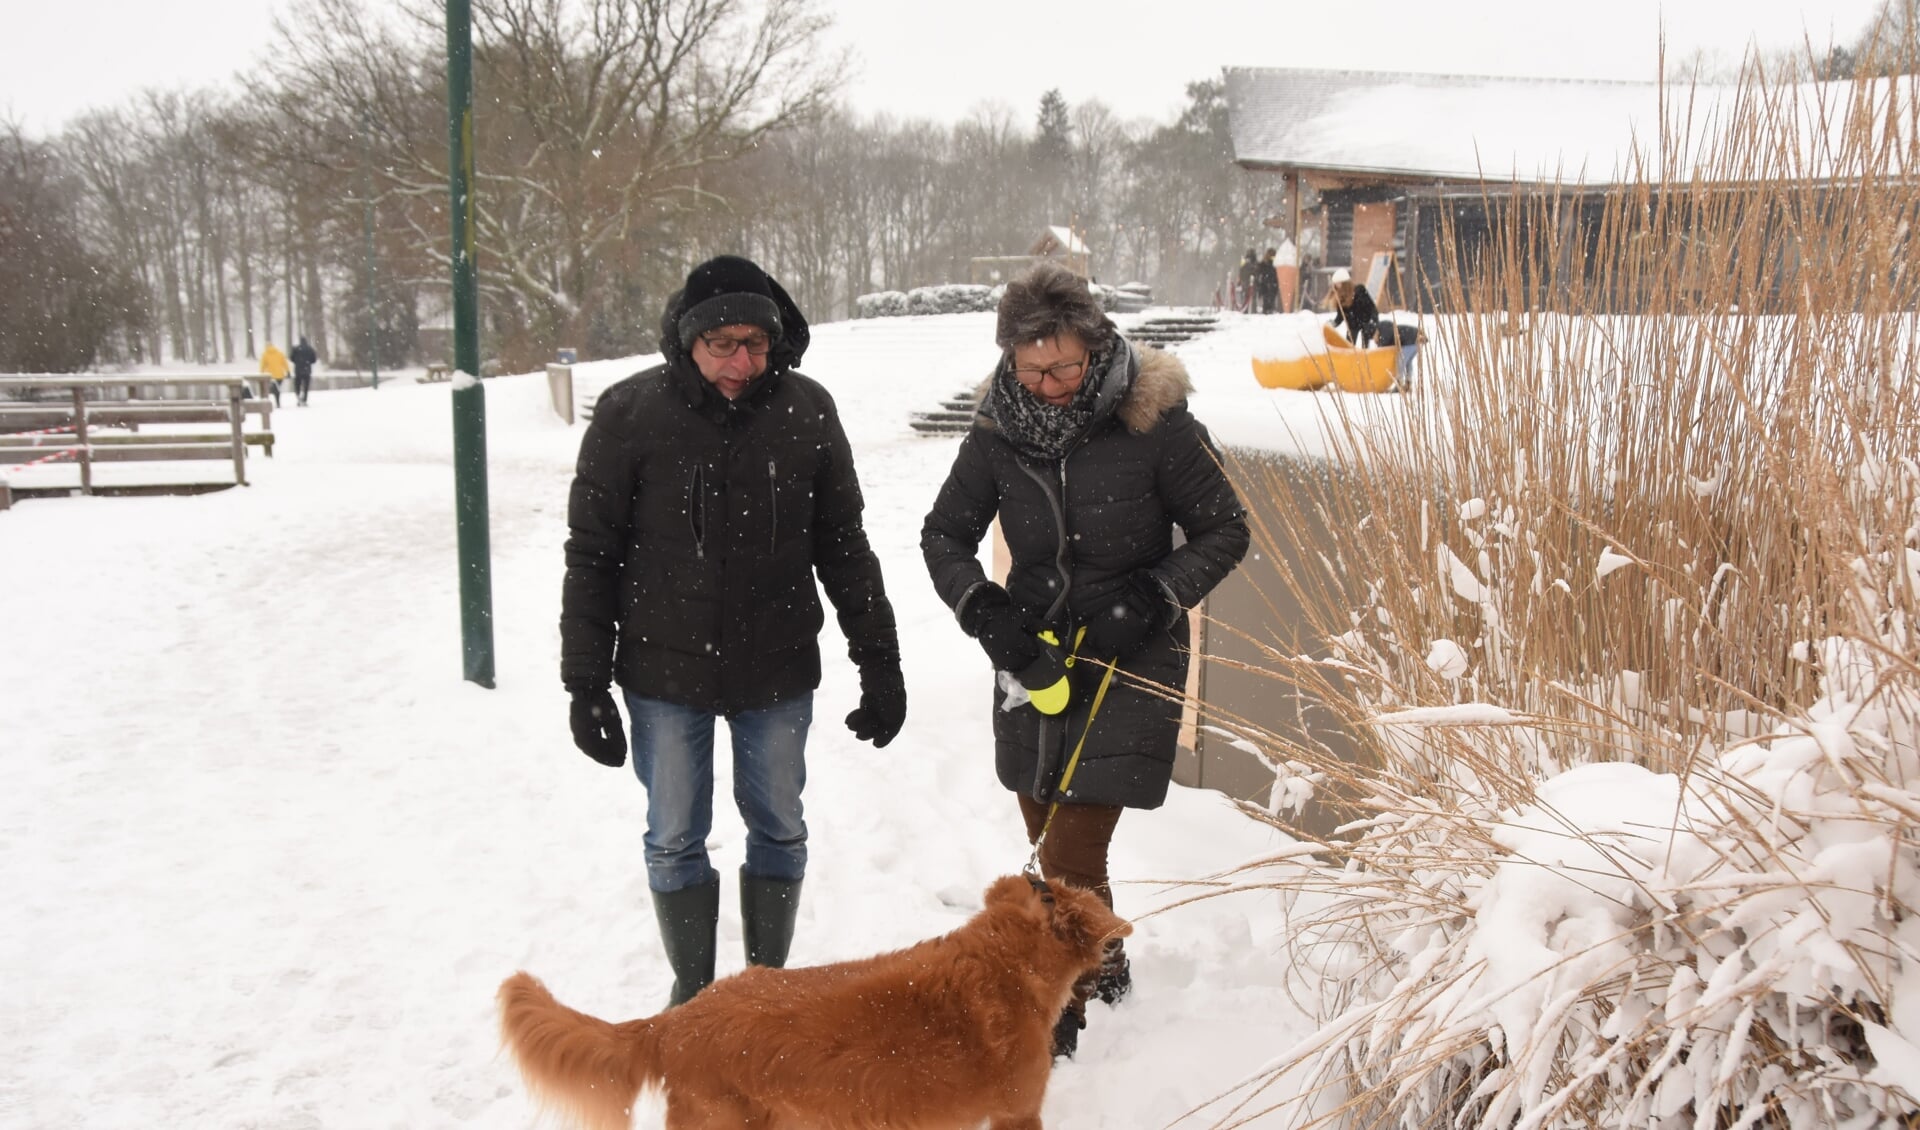 Joke en Nico de Bruijn laten hun hond genieten van de sneeuw en halen zelf tegelijk een frisse neus